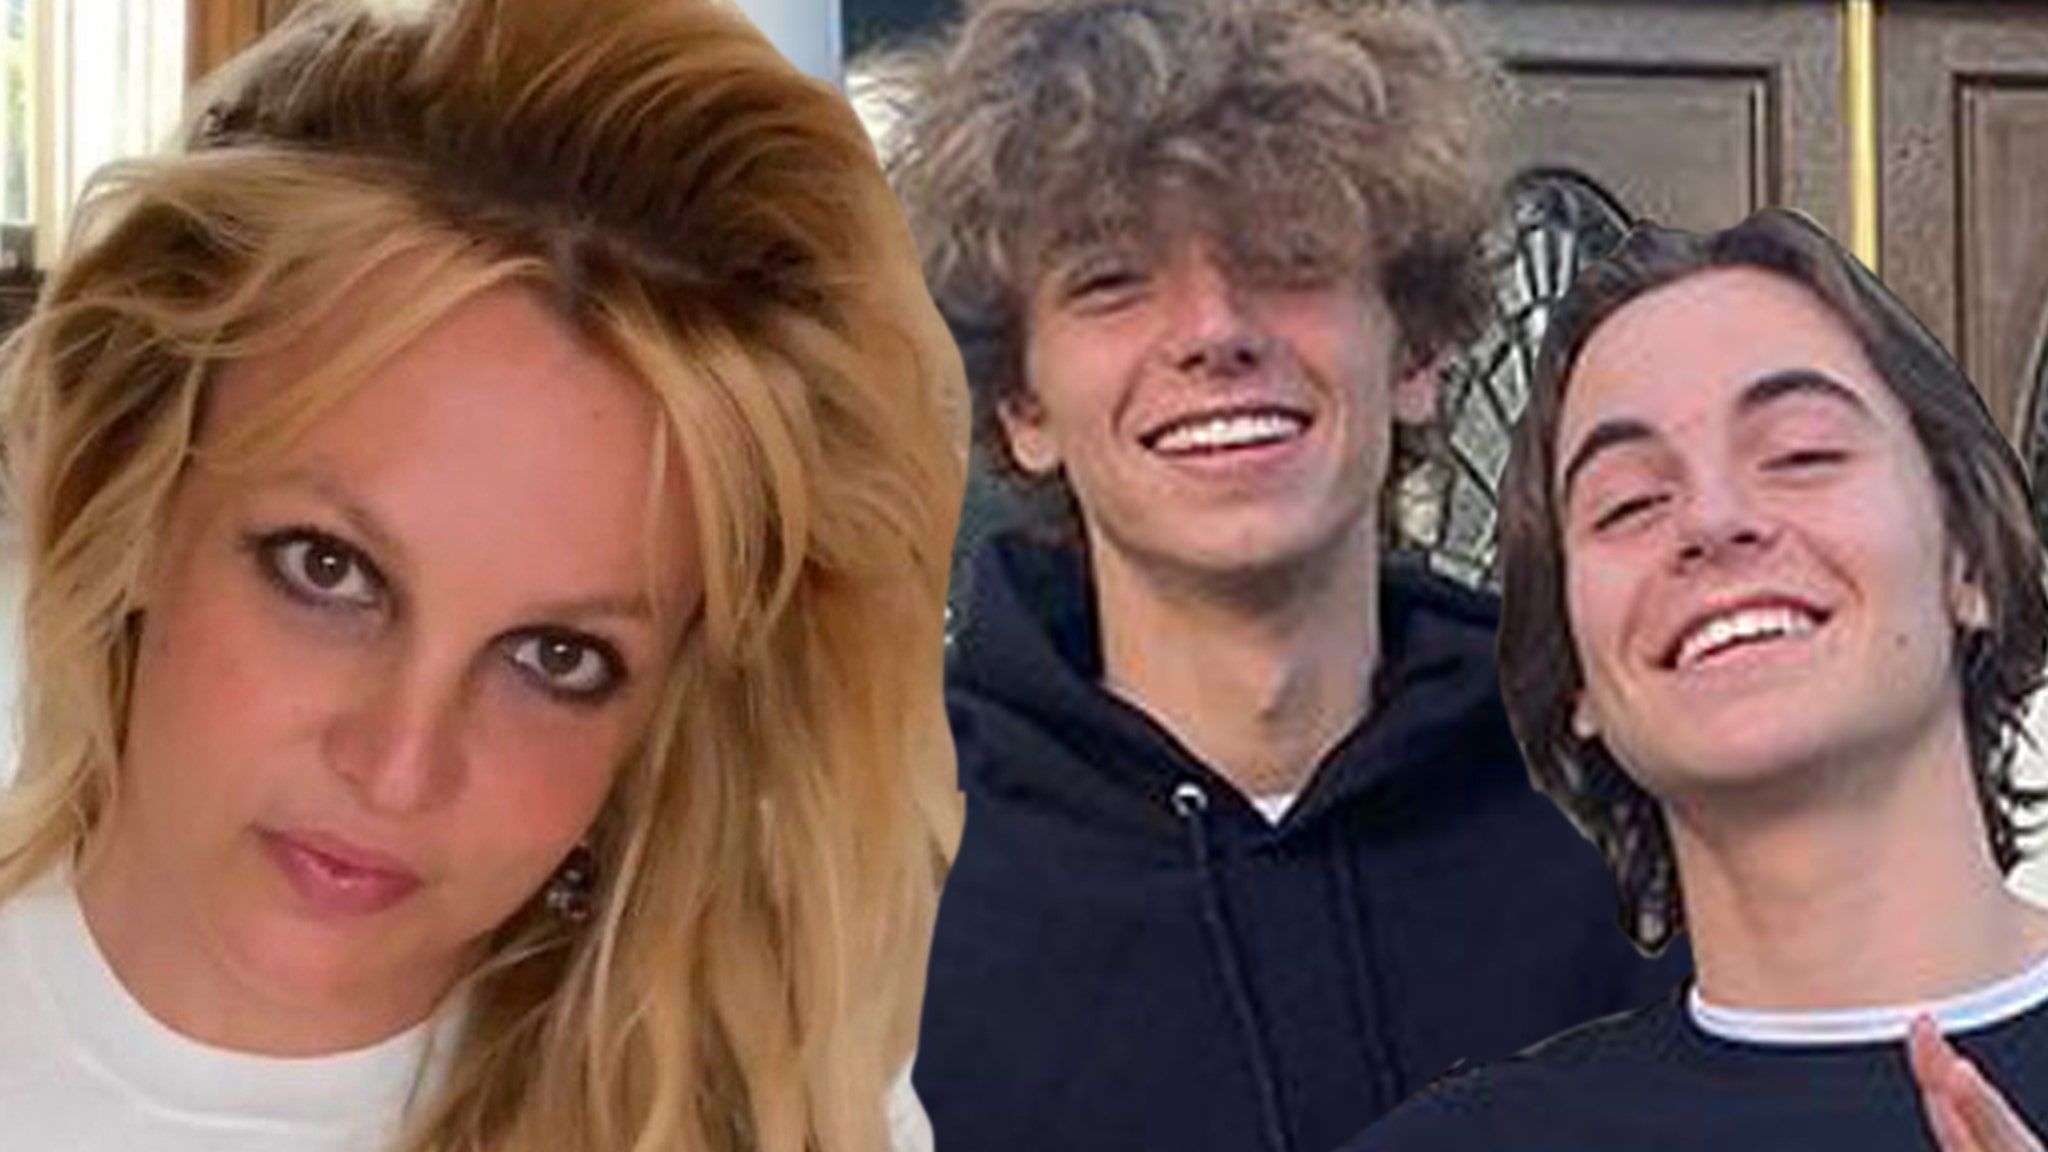 Der Online-Angriff von Britney Spears auf ihre Söhne hat die Beziehung weiter belastet